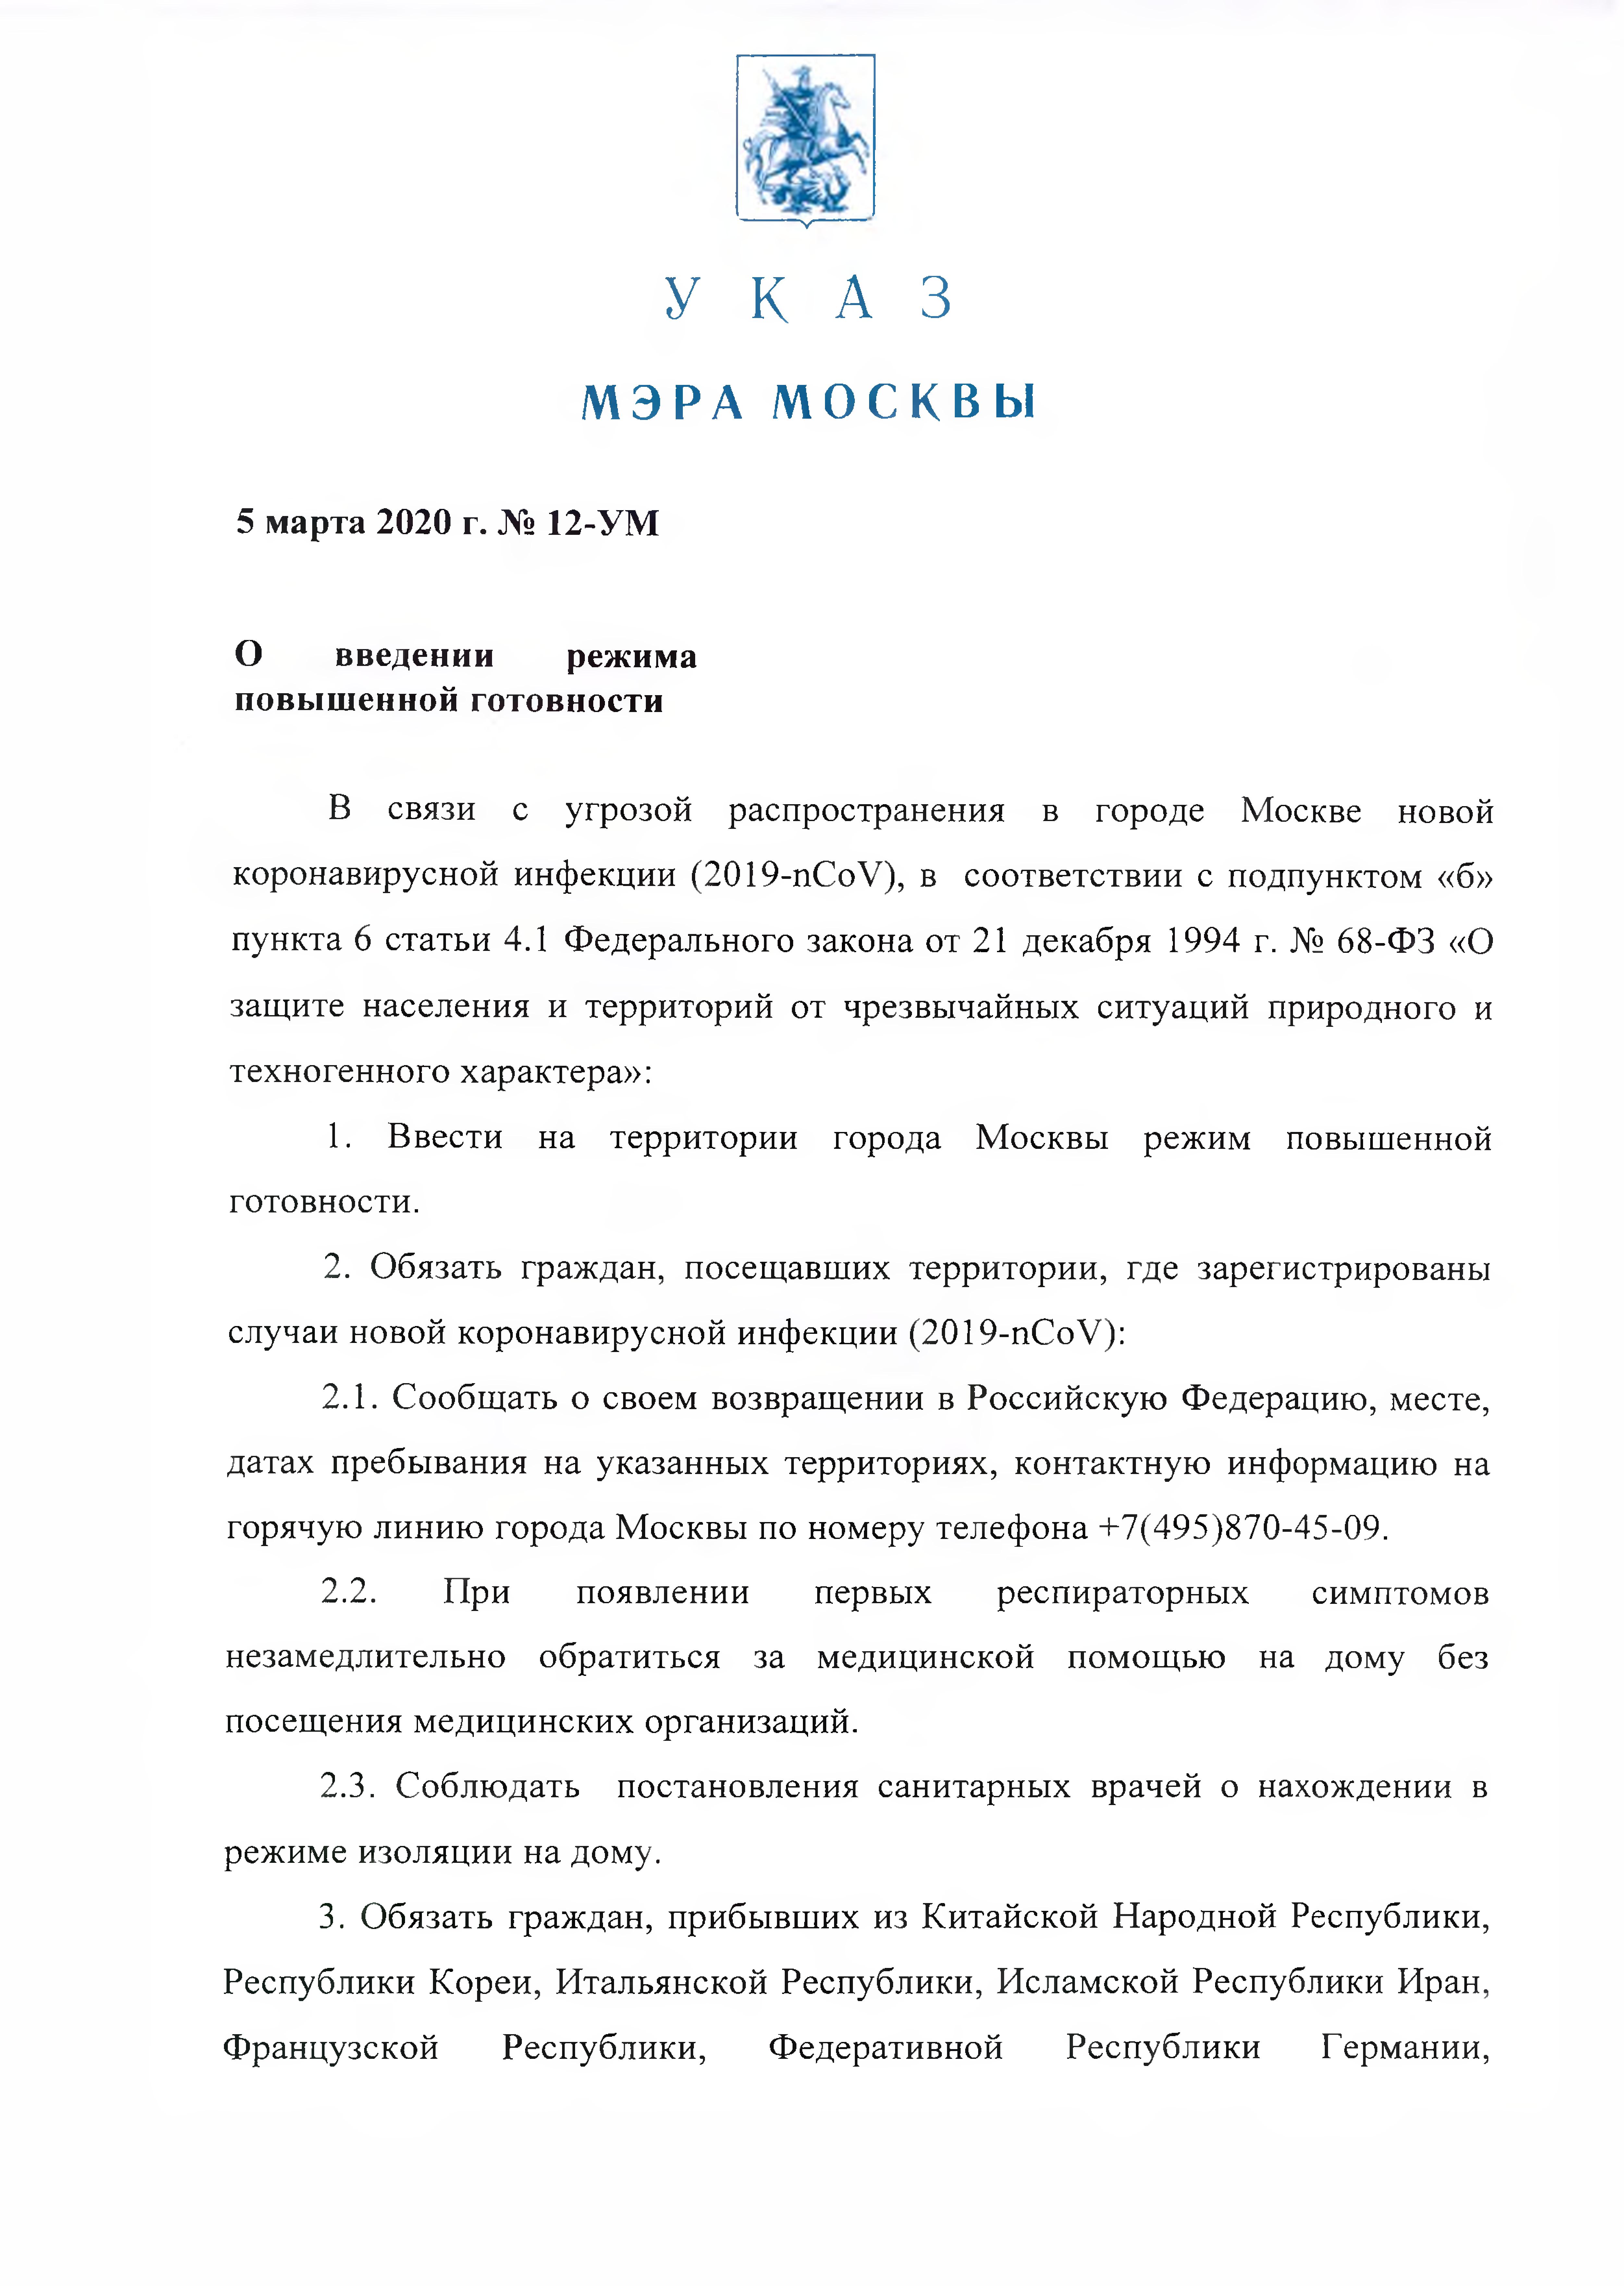 Указ мэра Москвы от 5 марта 2020 года № 12-УМ "О введении режима повышенной готовности" - фото 2